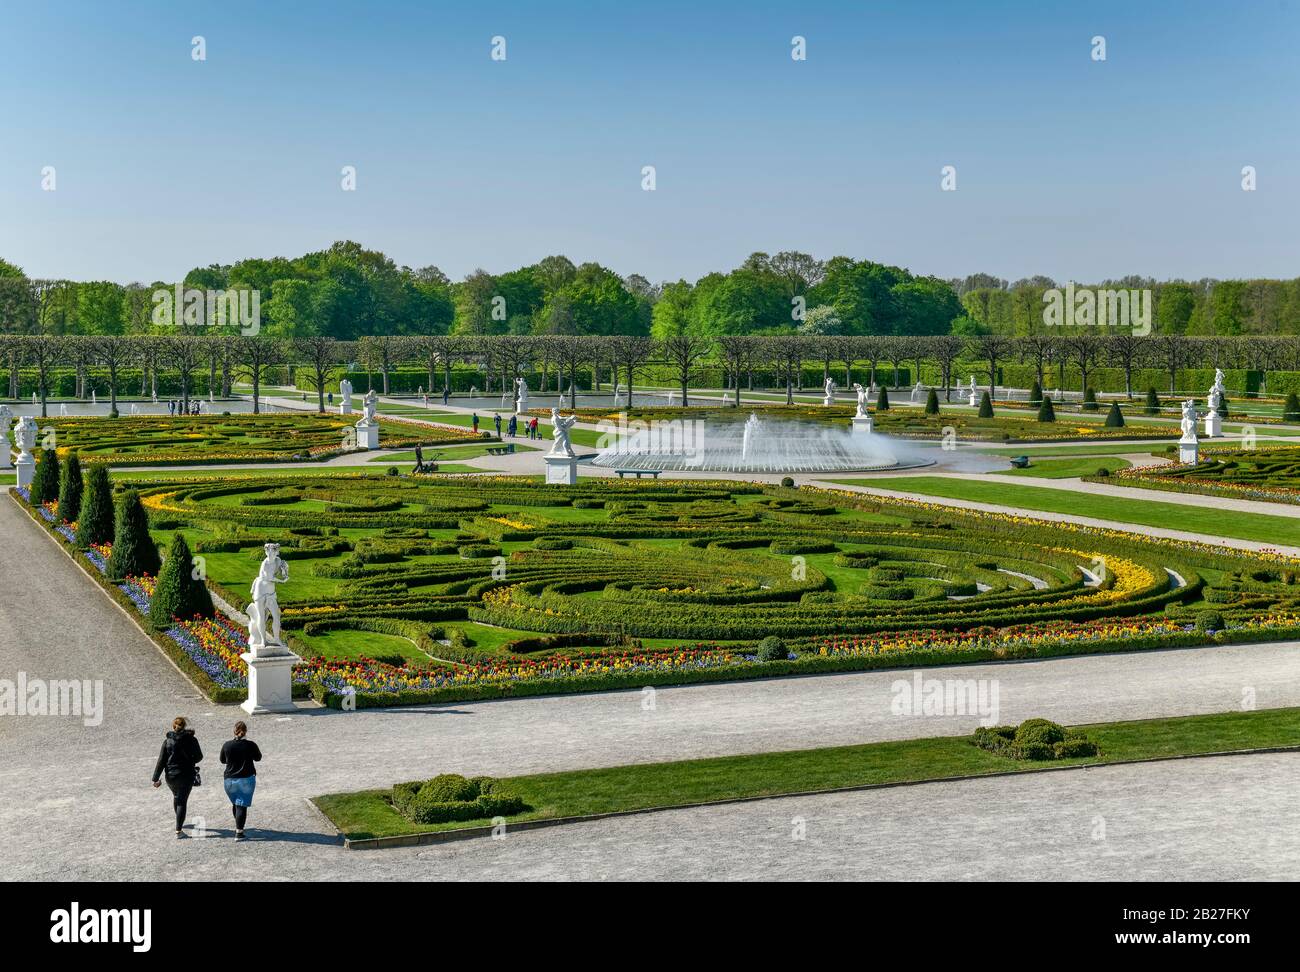 Großes Parterre, Großer Garten, Herrenhäuser Gärten, Hannover, Niedersachsen, Deutschland Stock Photo